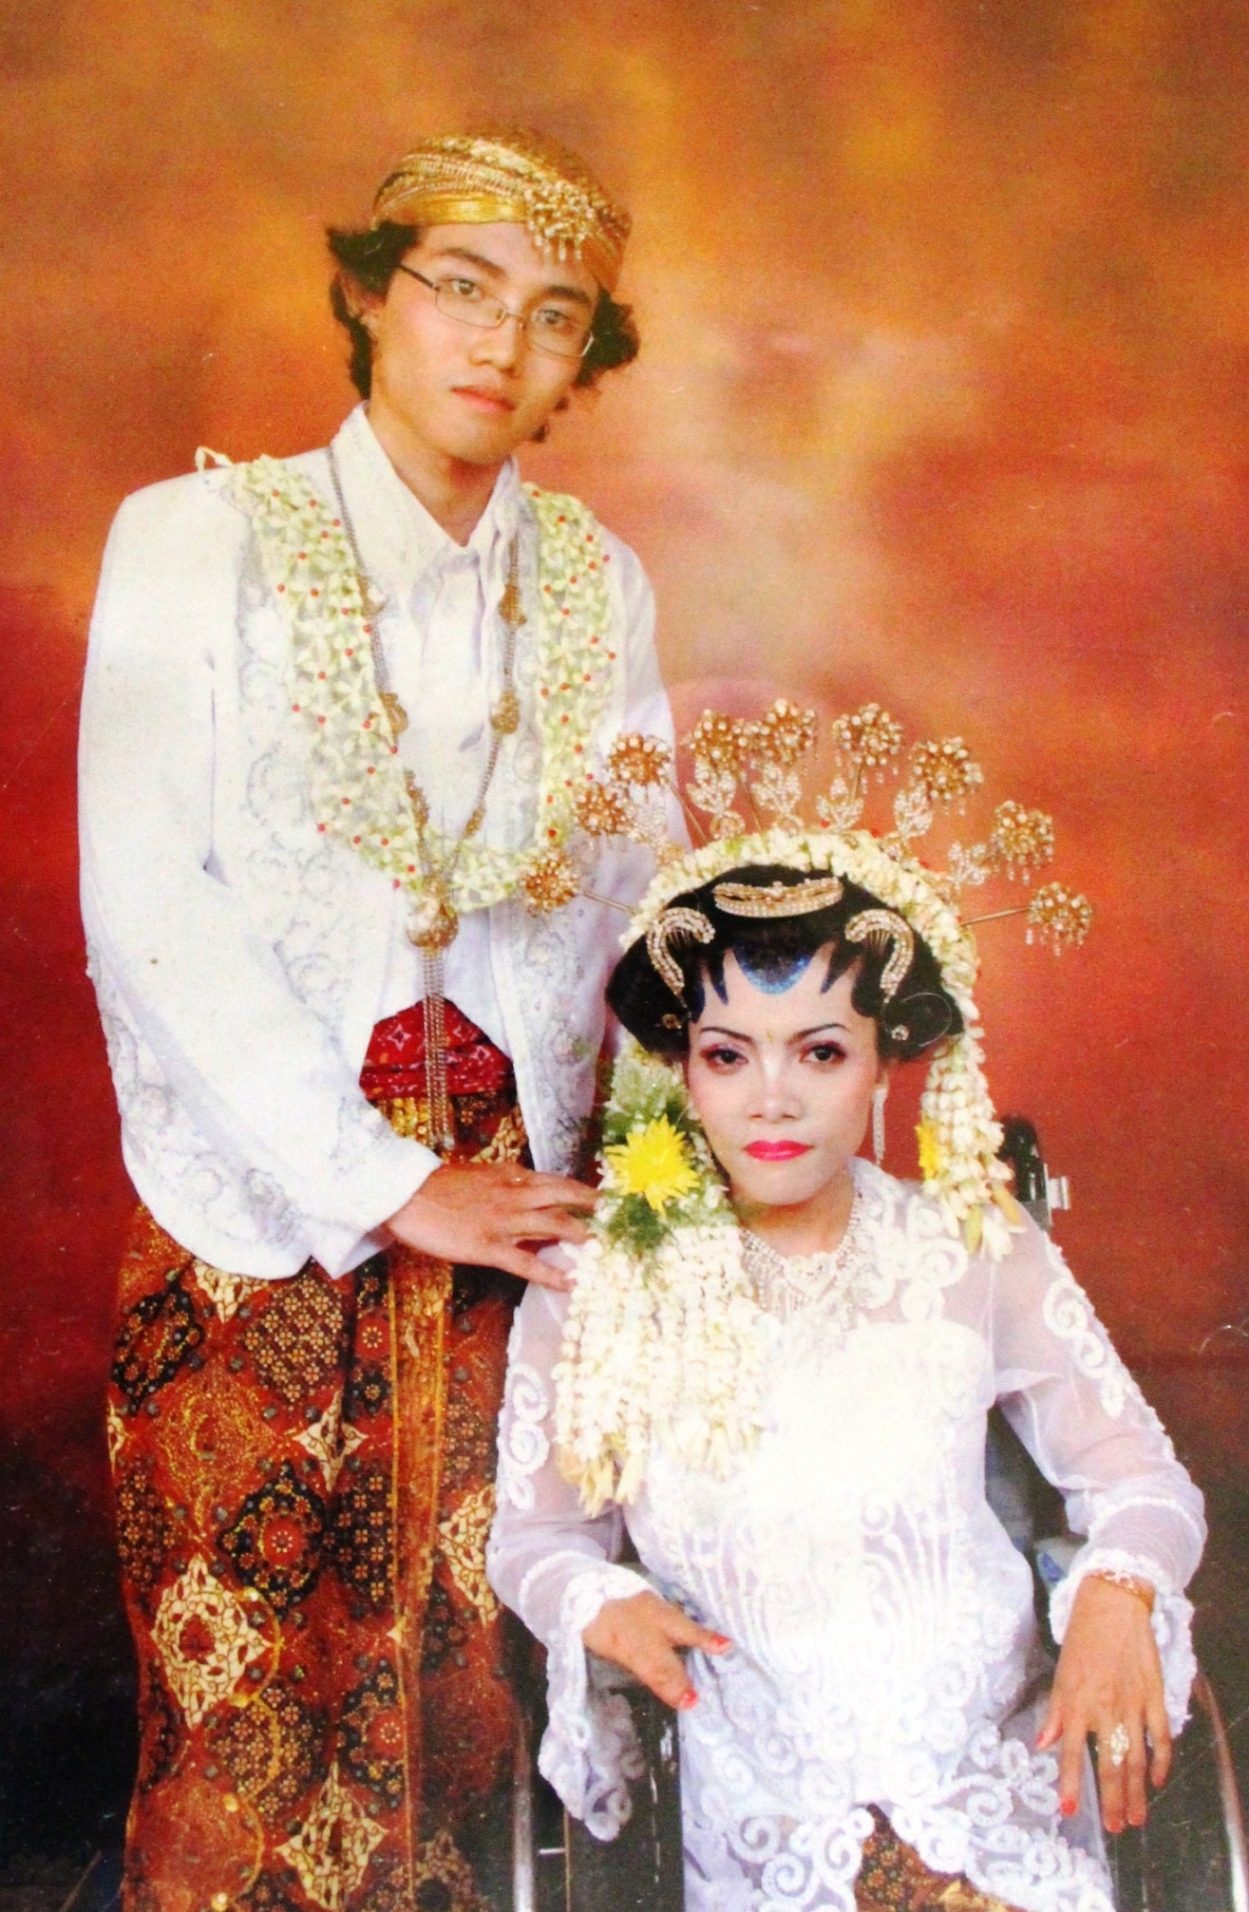 Foto pernikahan Wahyu dan Aslima pada 2010. Foto dokumentasi pribadi  